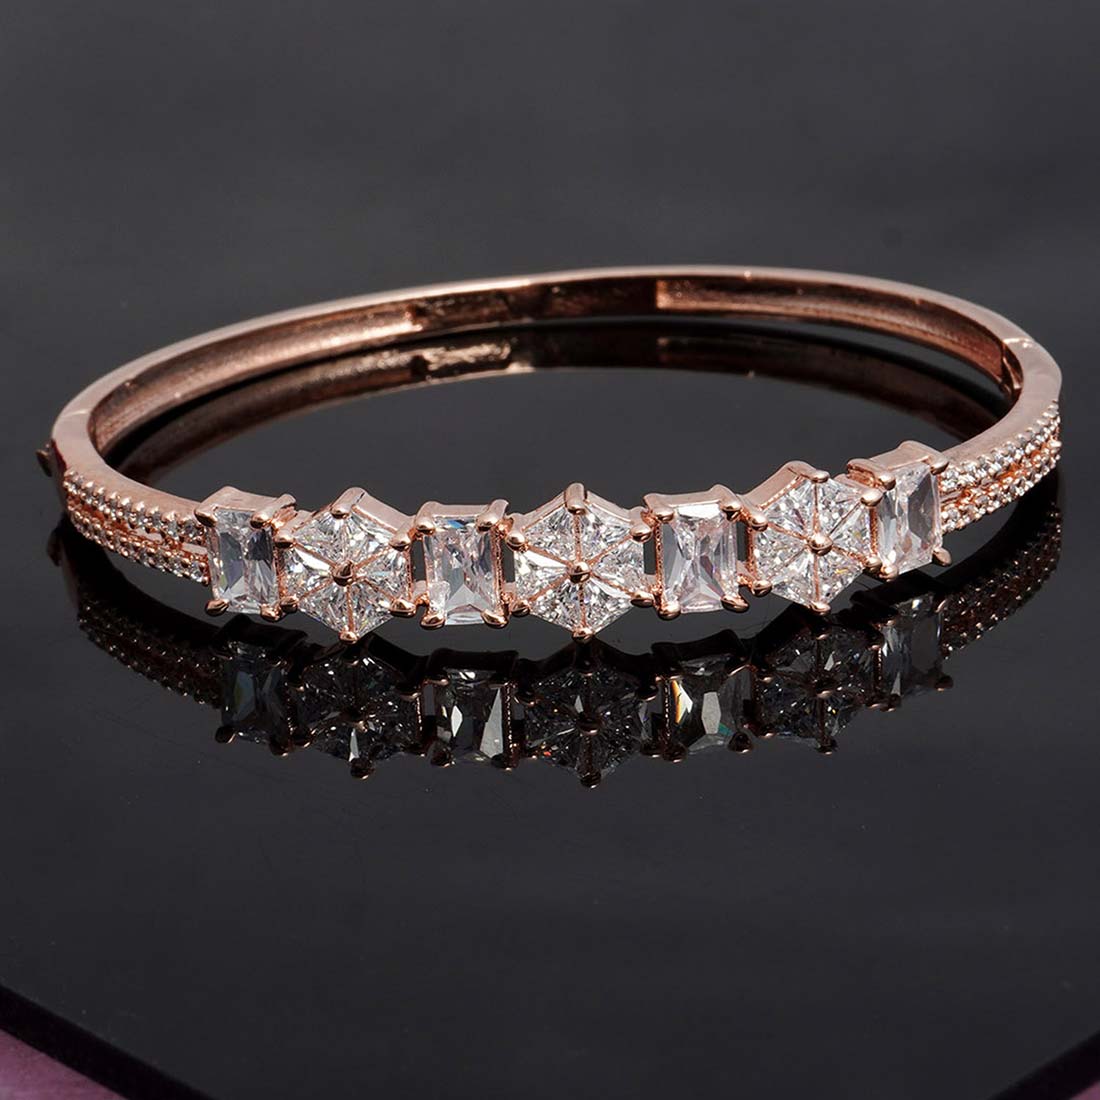 Crystal Embellished Rose Gold Cuff Bracelet
